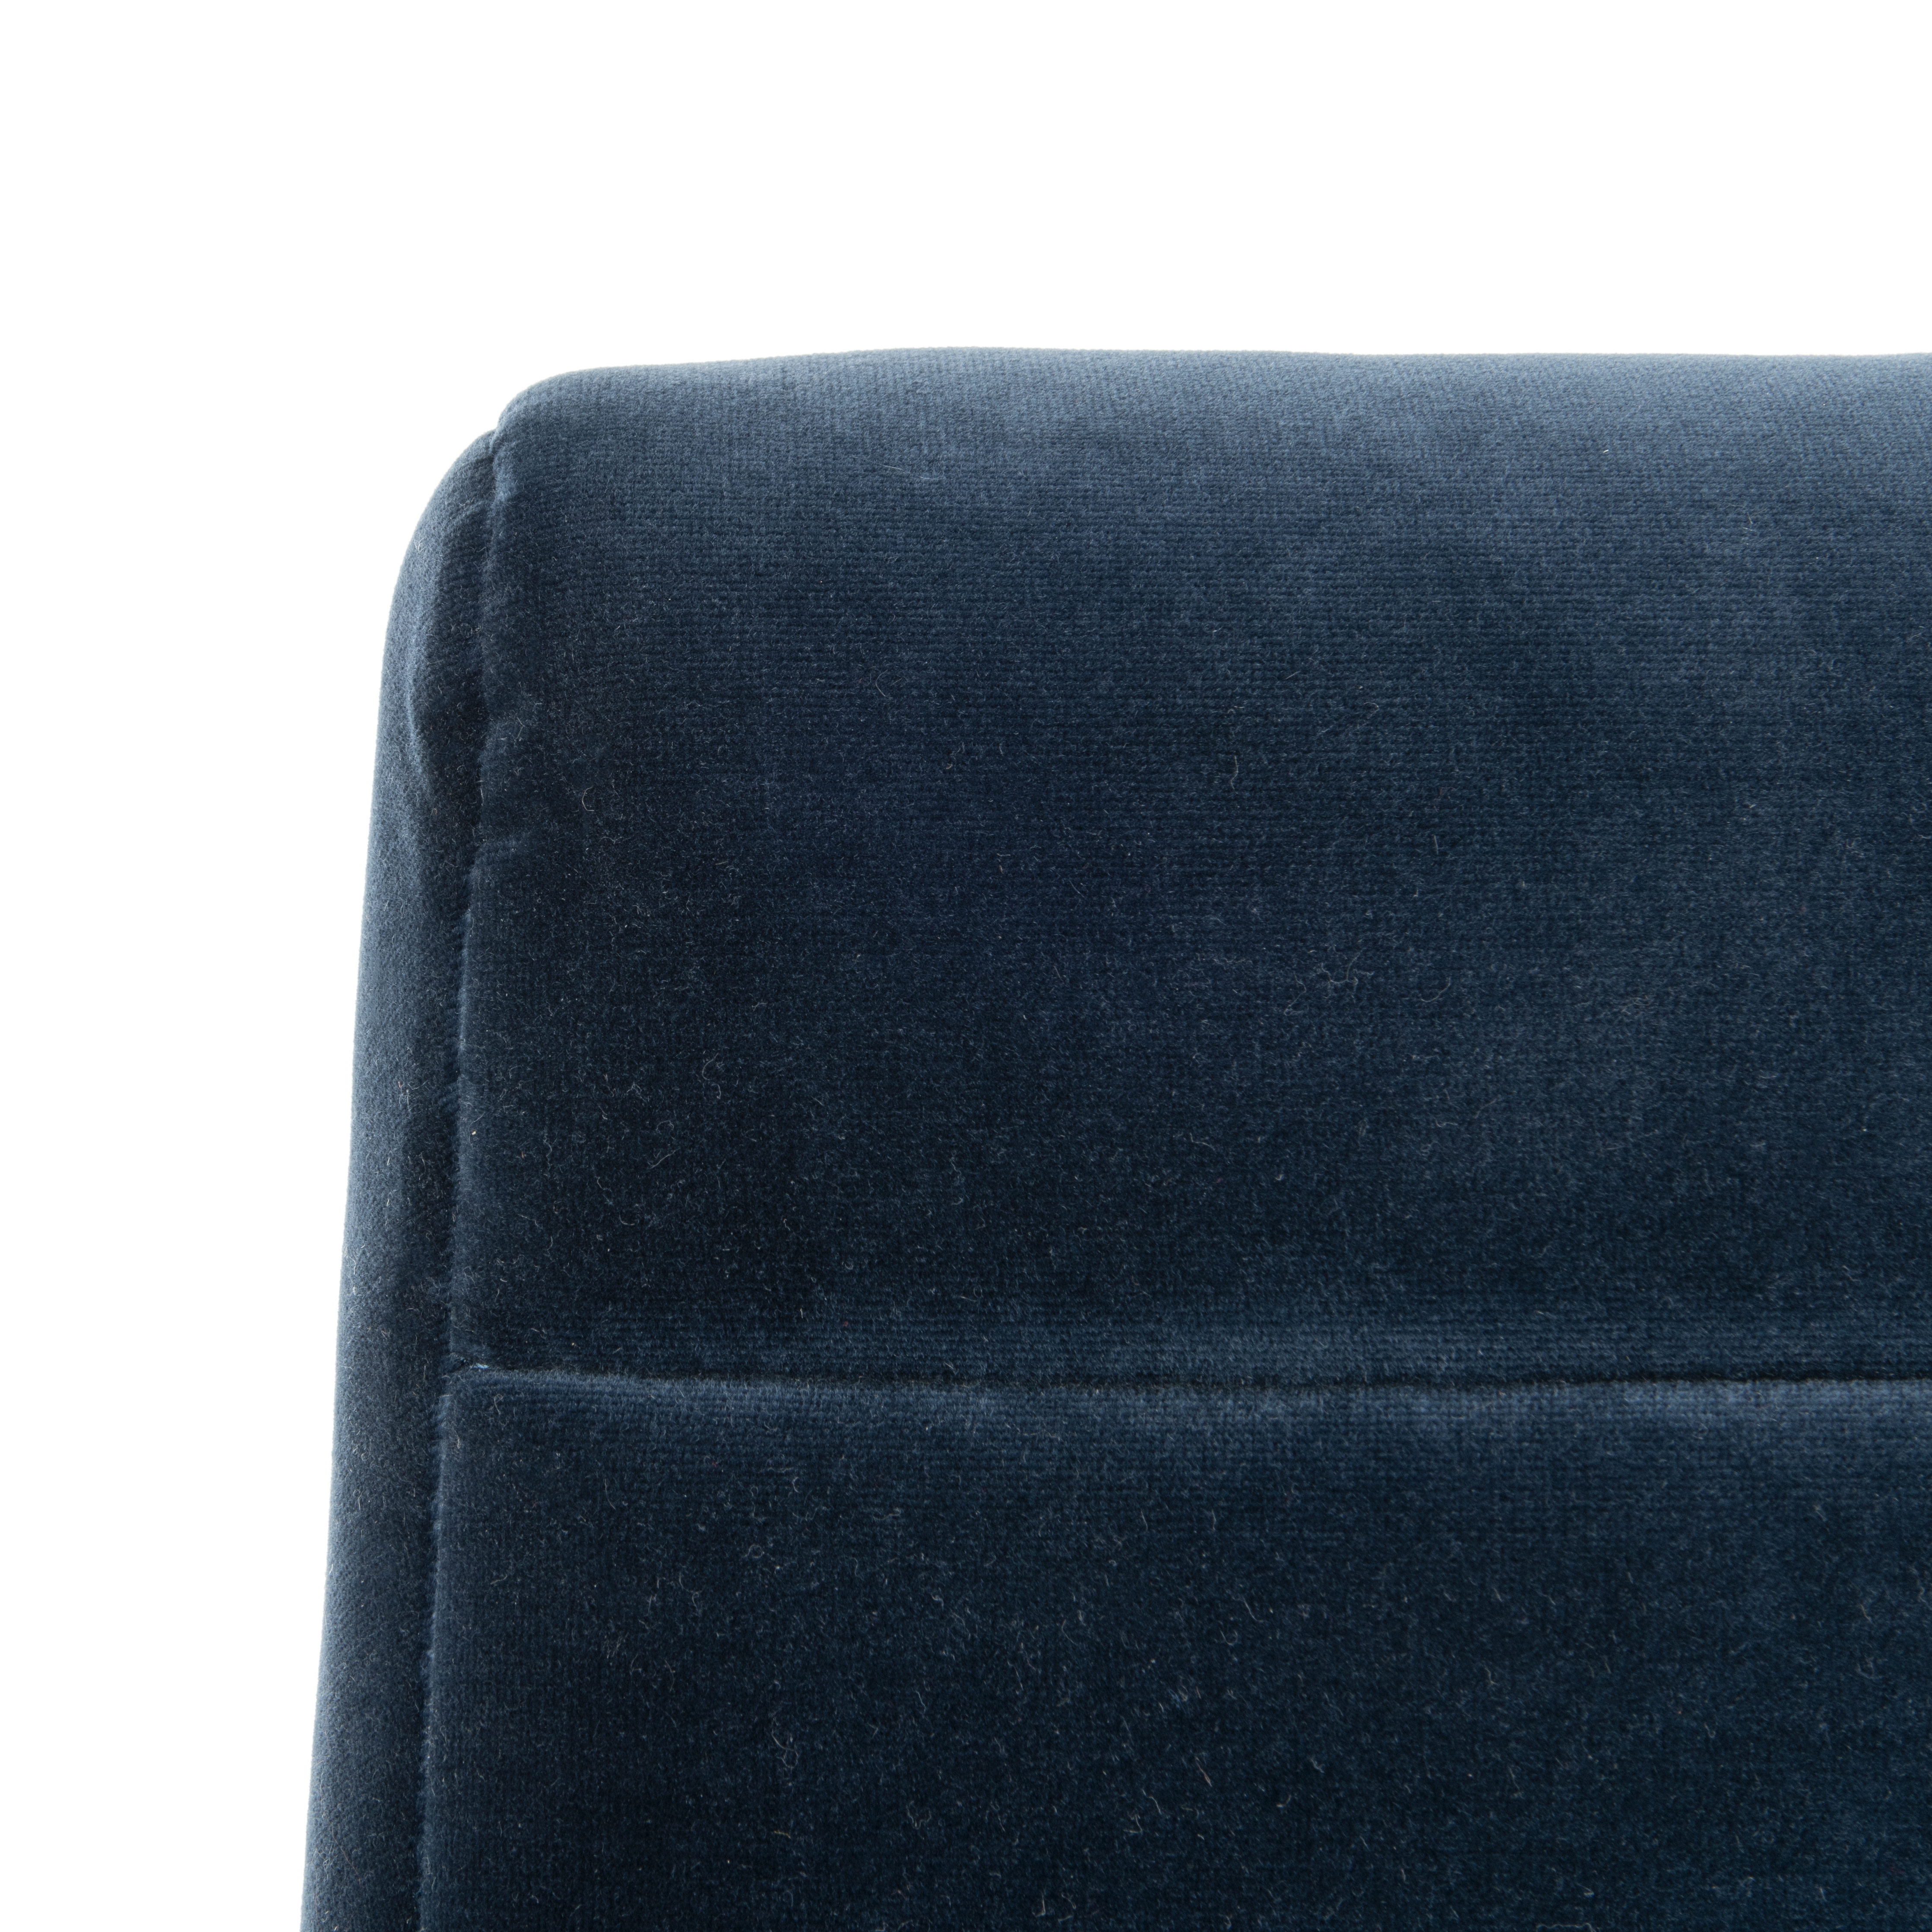 Willow Channel Tufted Arm Chair - Navy/Dark Walnut - Safavieh - Image 3